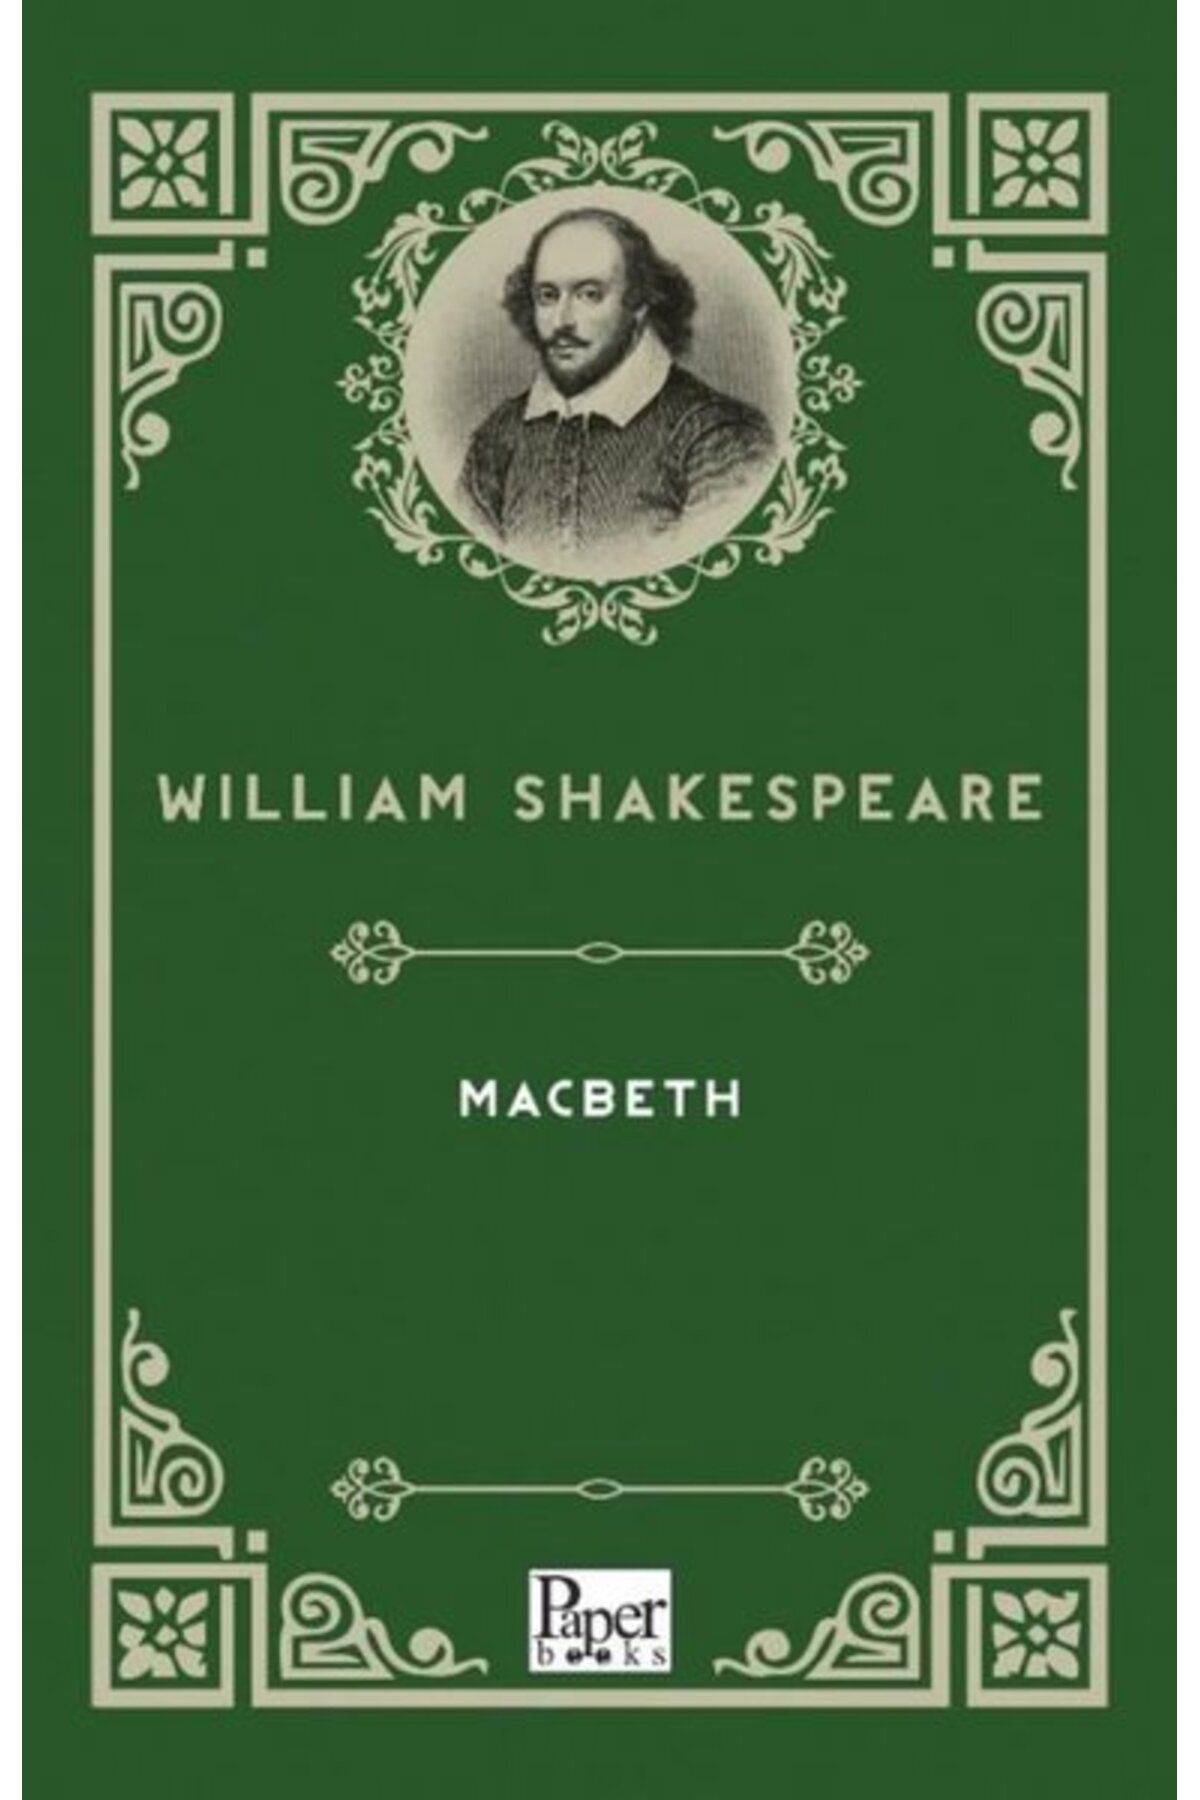 PAPER BOOKS Macbeth